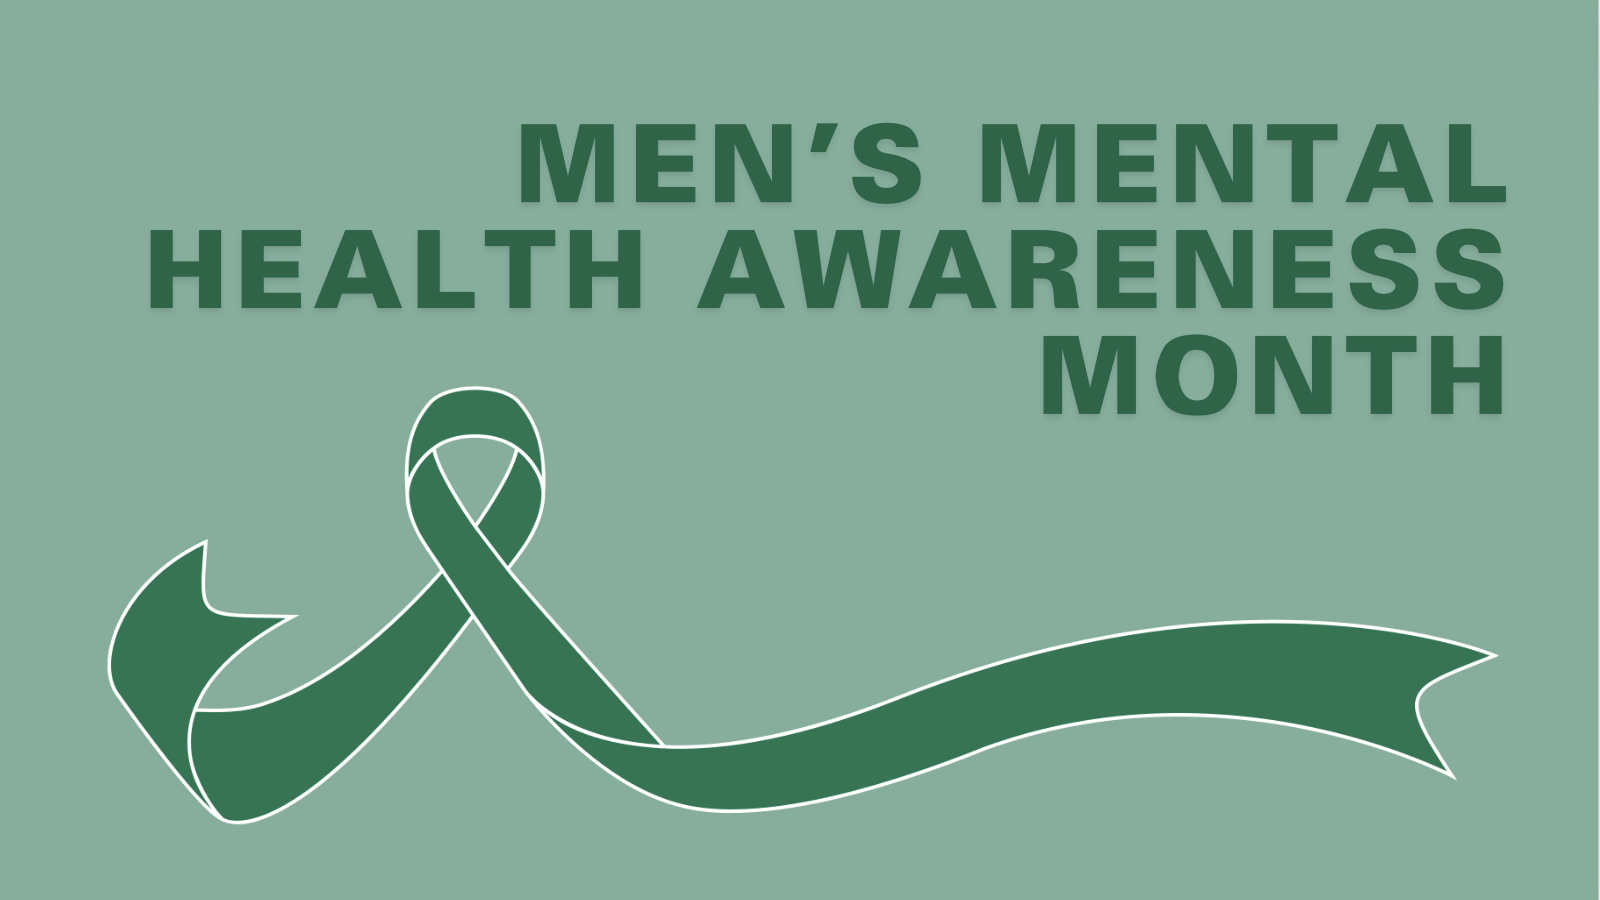 Men's Mental Health Awareness Month